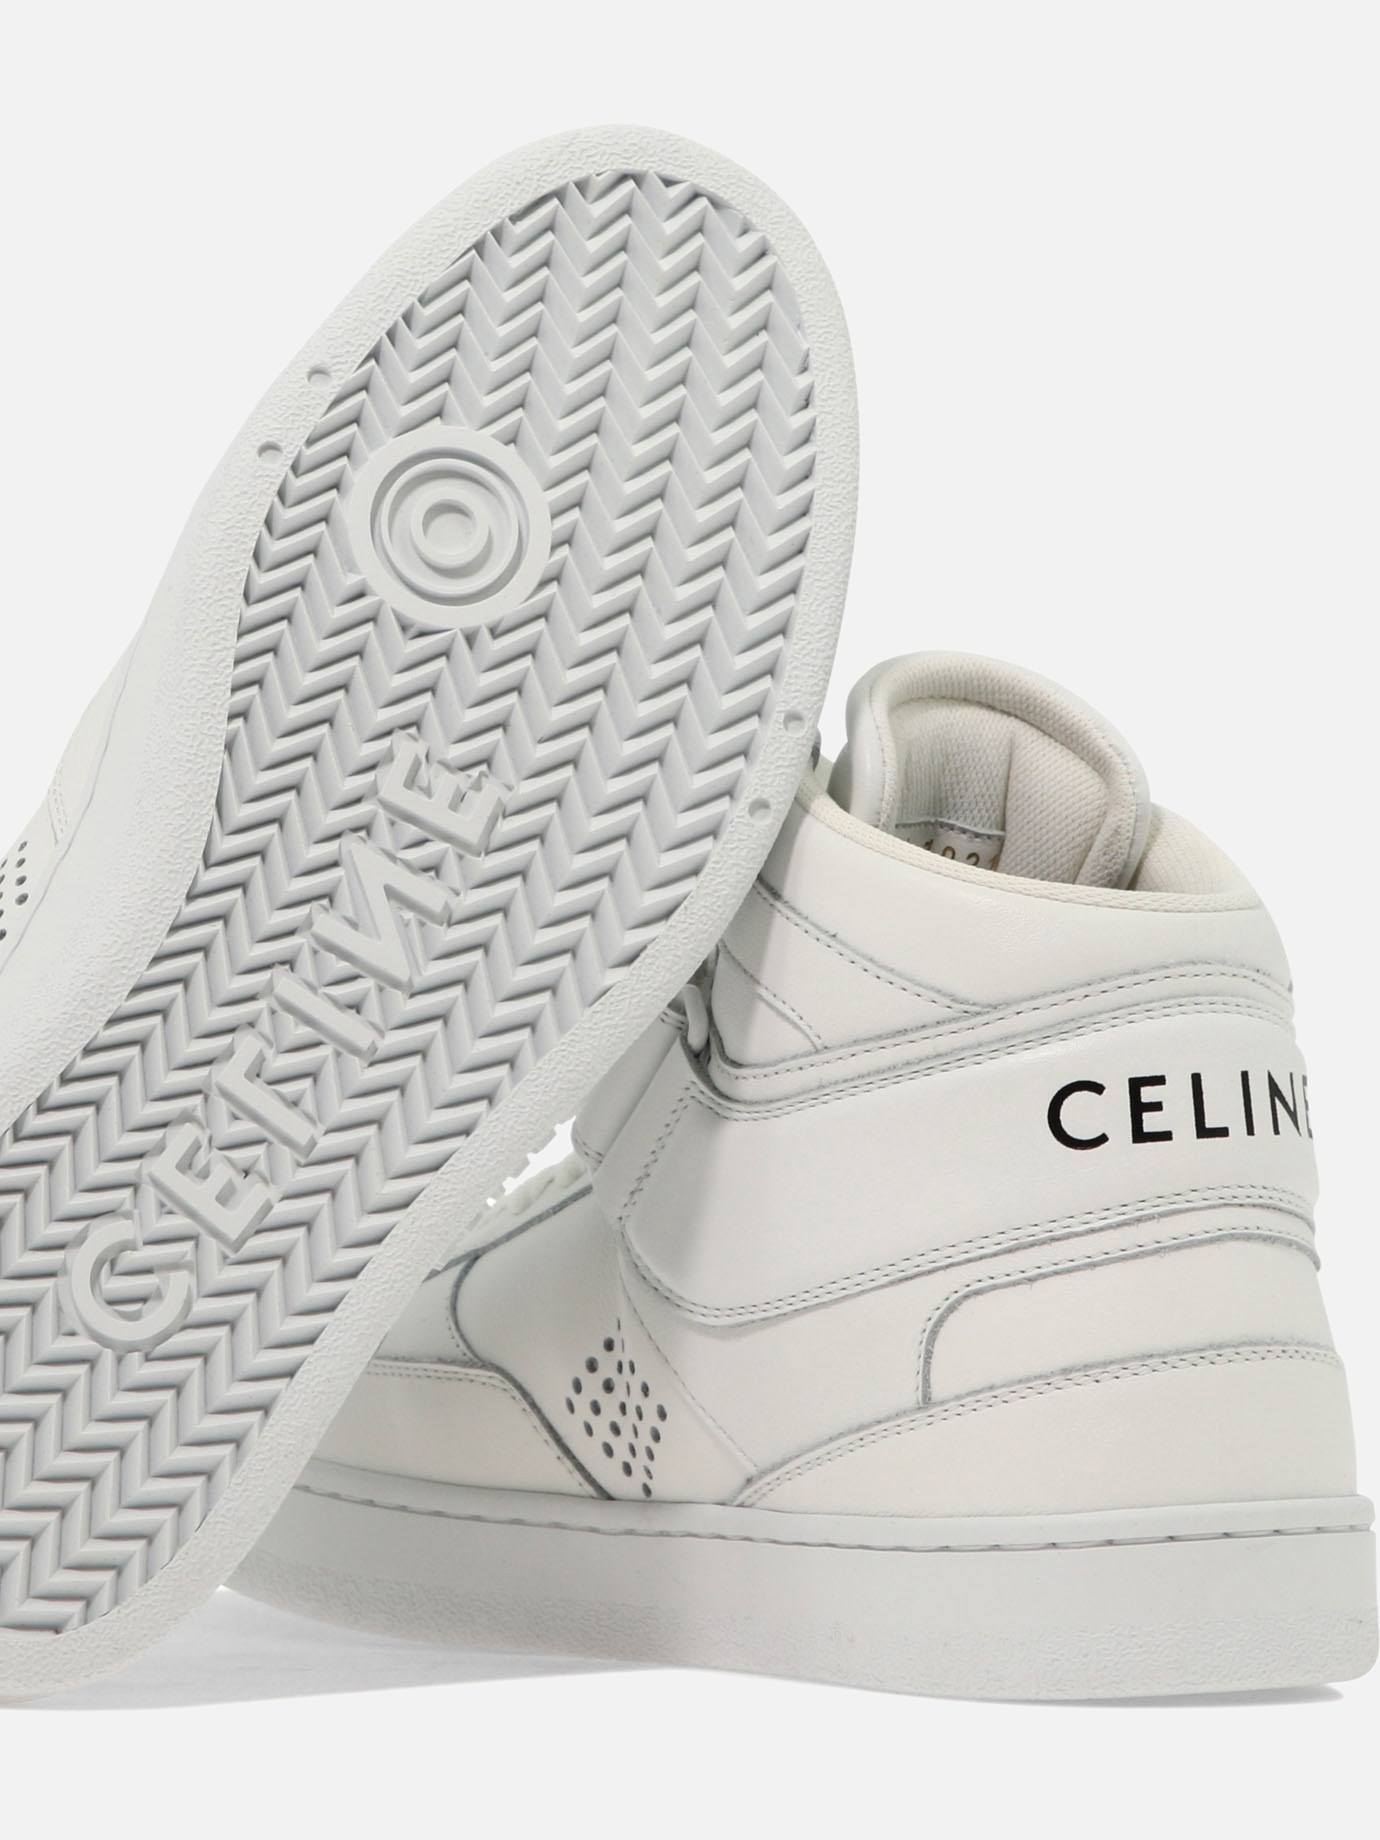  Celine  sneakers by Celine